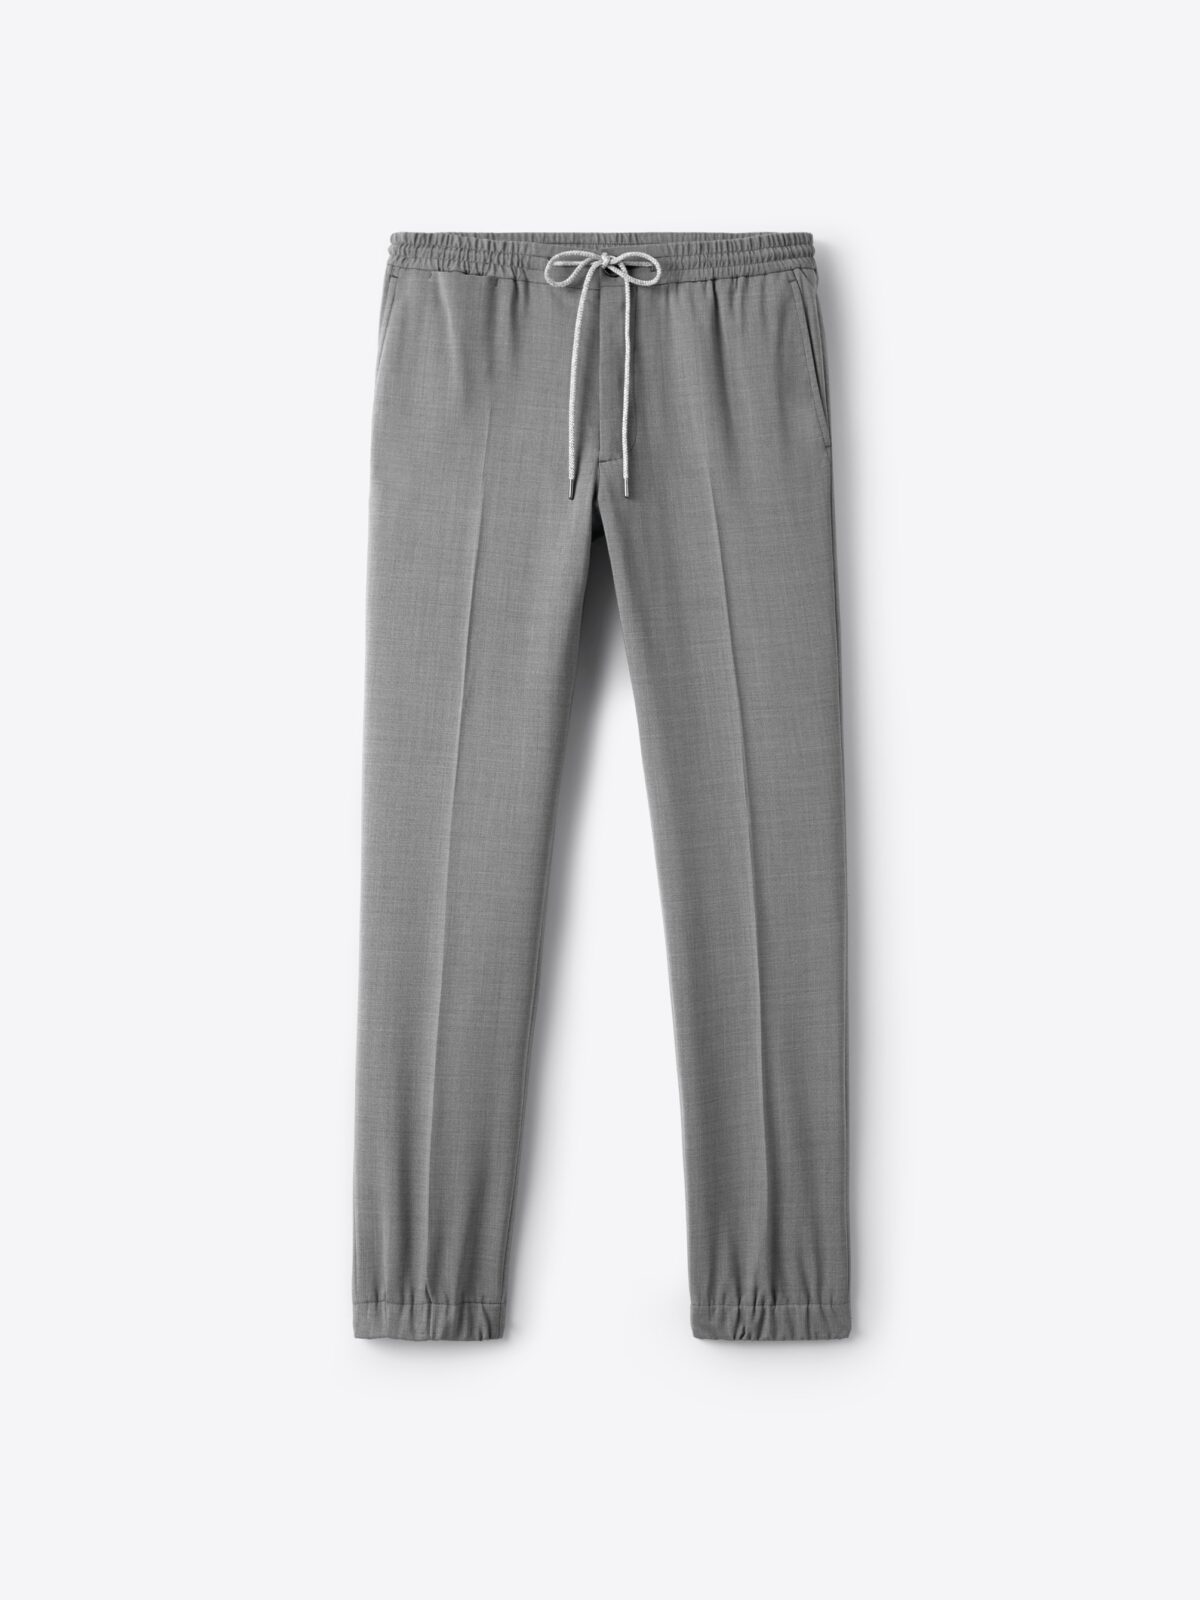 H&M Jogger Pants- Plain (AUTHENTIC)- RESTOCKED